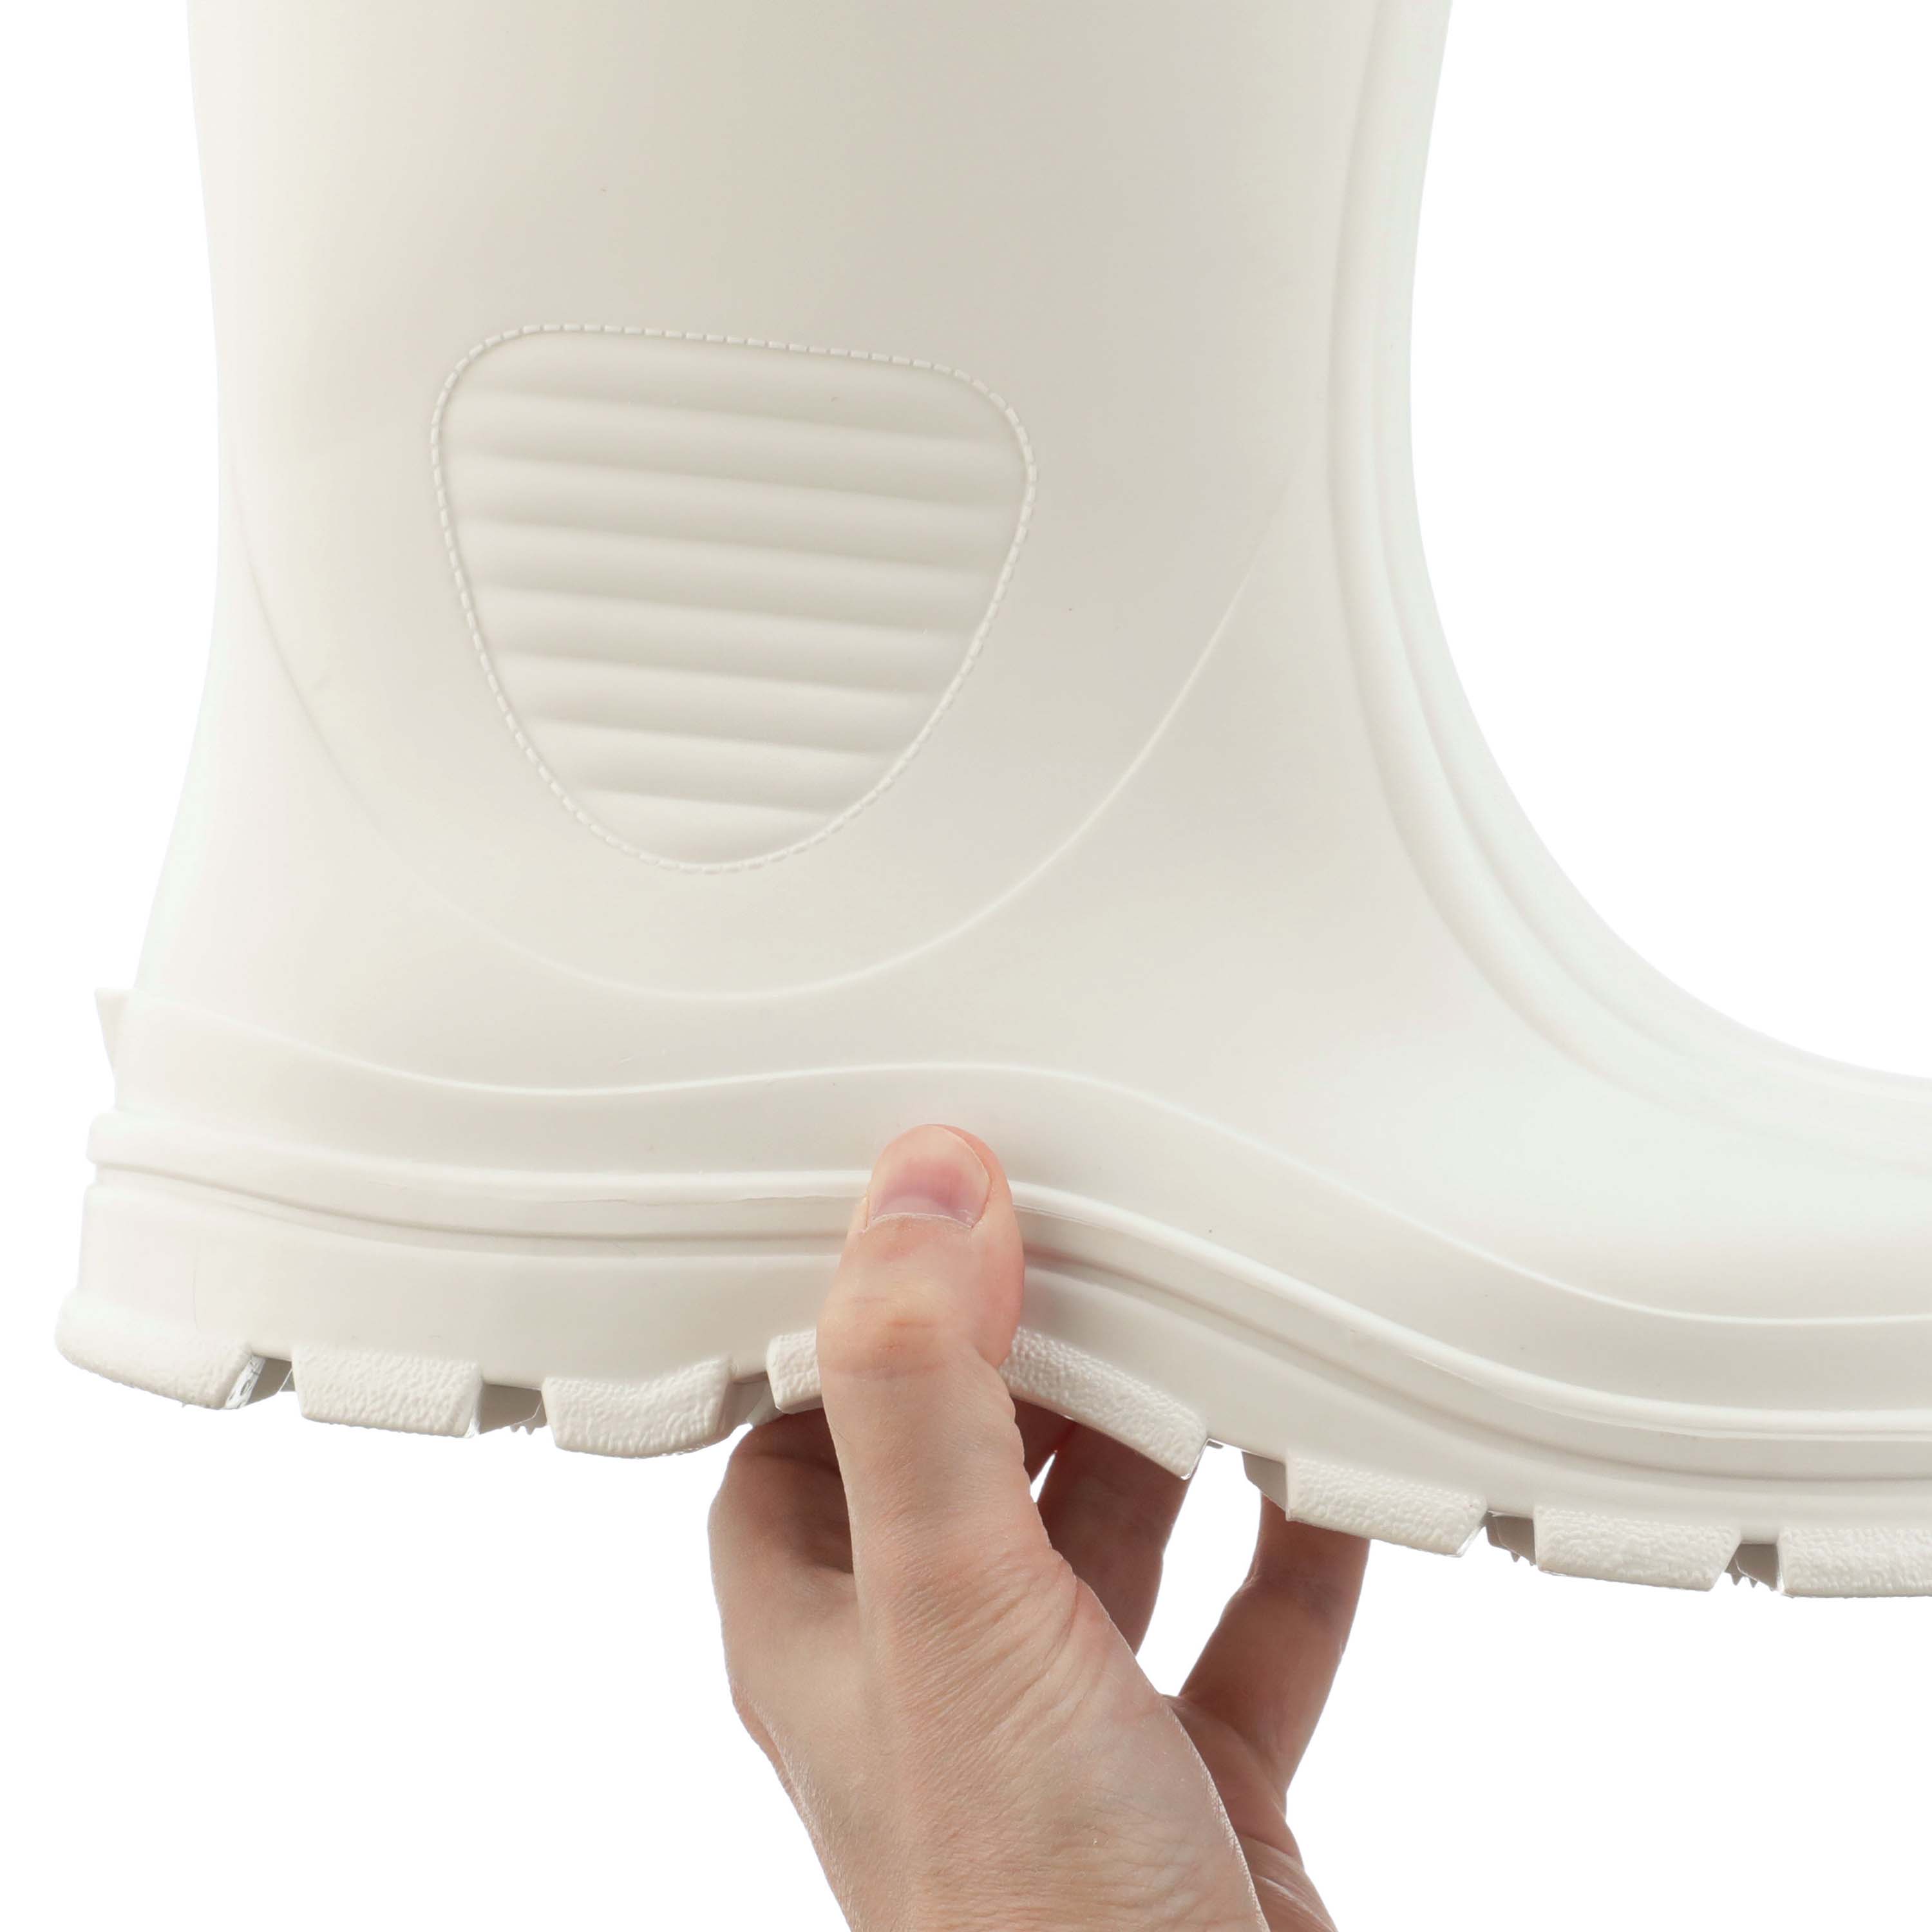 Heartland Footwear Men's Steel Toe Shrimp Boot, Size: 11, White